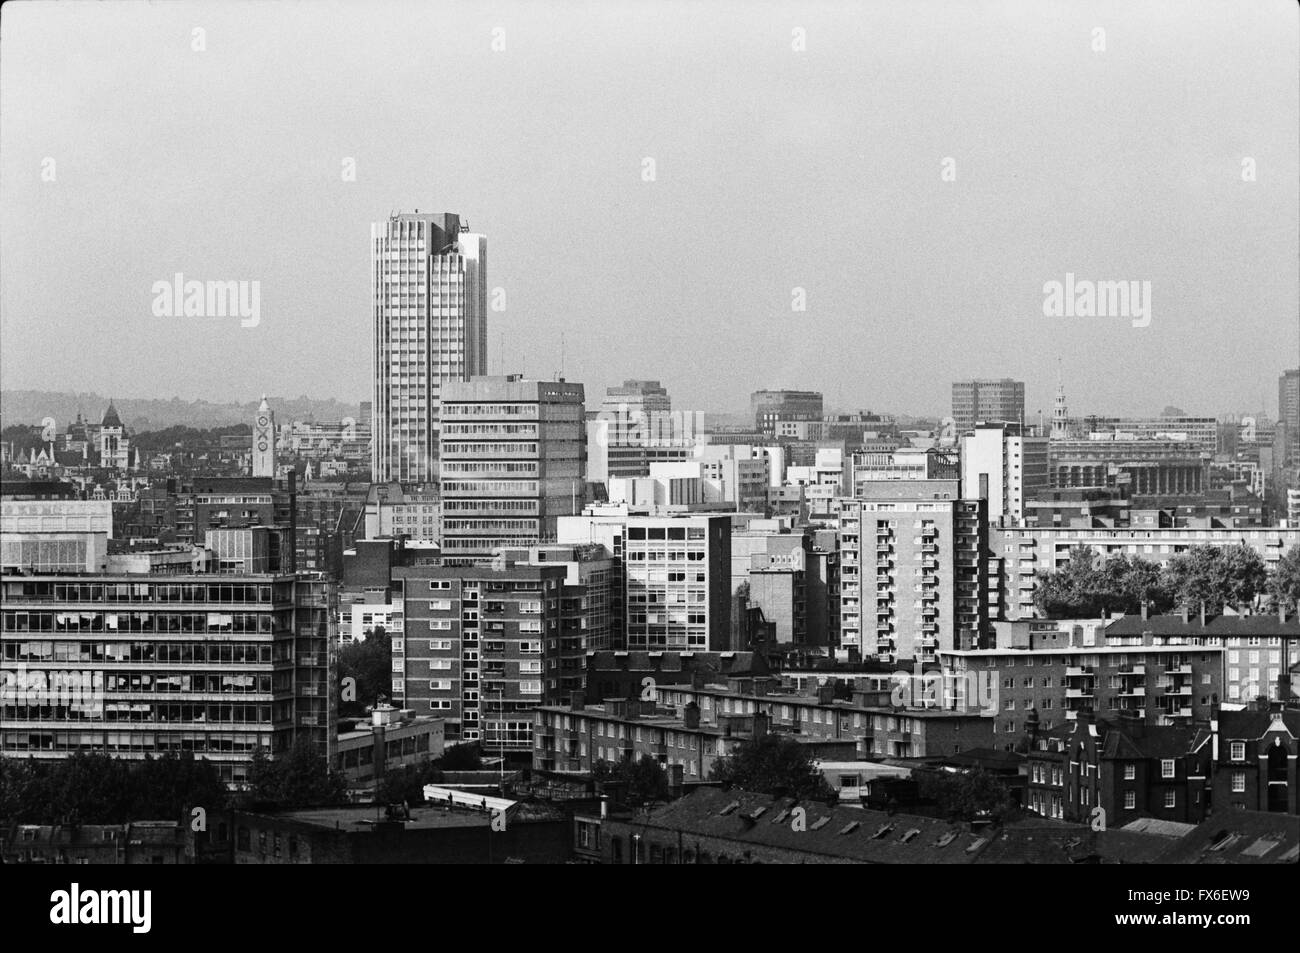 Archivierung Bild von London City Skyline von Elephant und Castle, 1979, London, England, vor dem Wolkenkratzer zeigen Könige erreichen Tower, 1972, von Richard Seifert (jetzt South Bank Tower) und Oxo Tower, von Albert Moore, 1928-9 Stockfoto